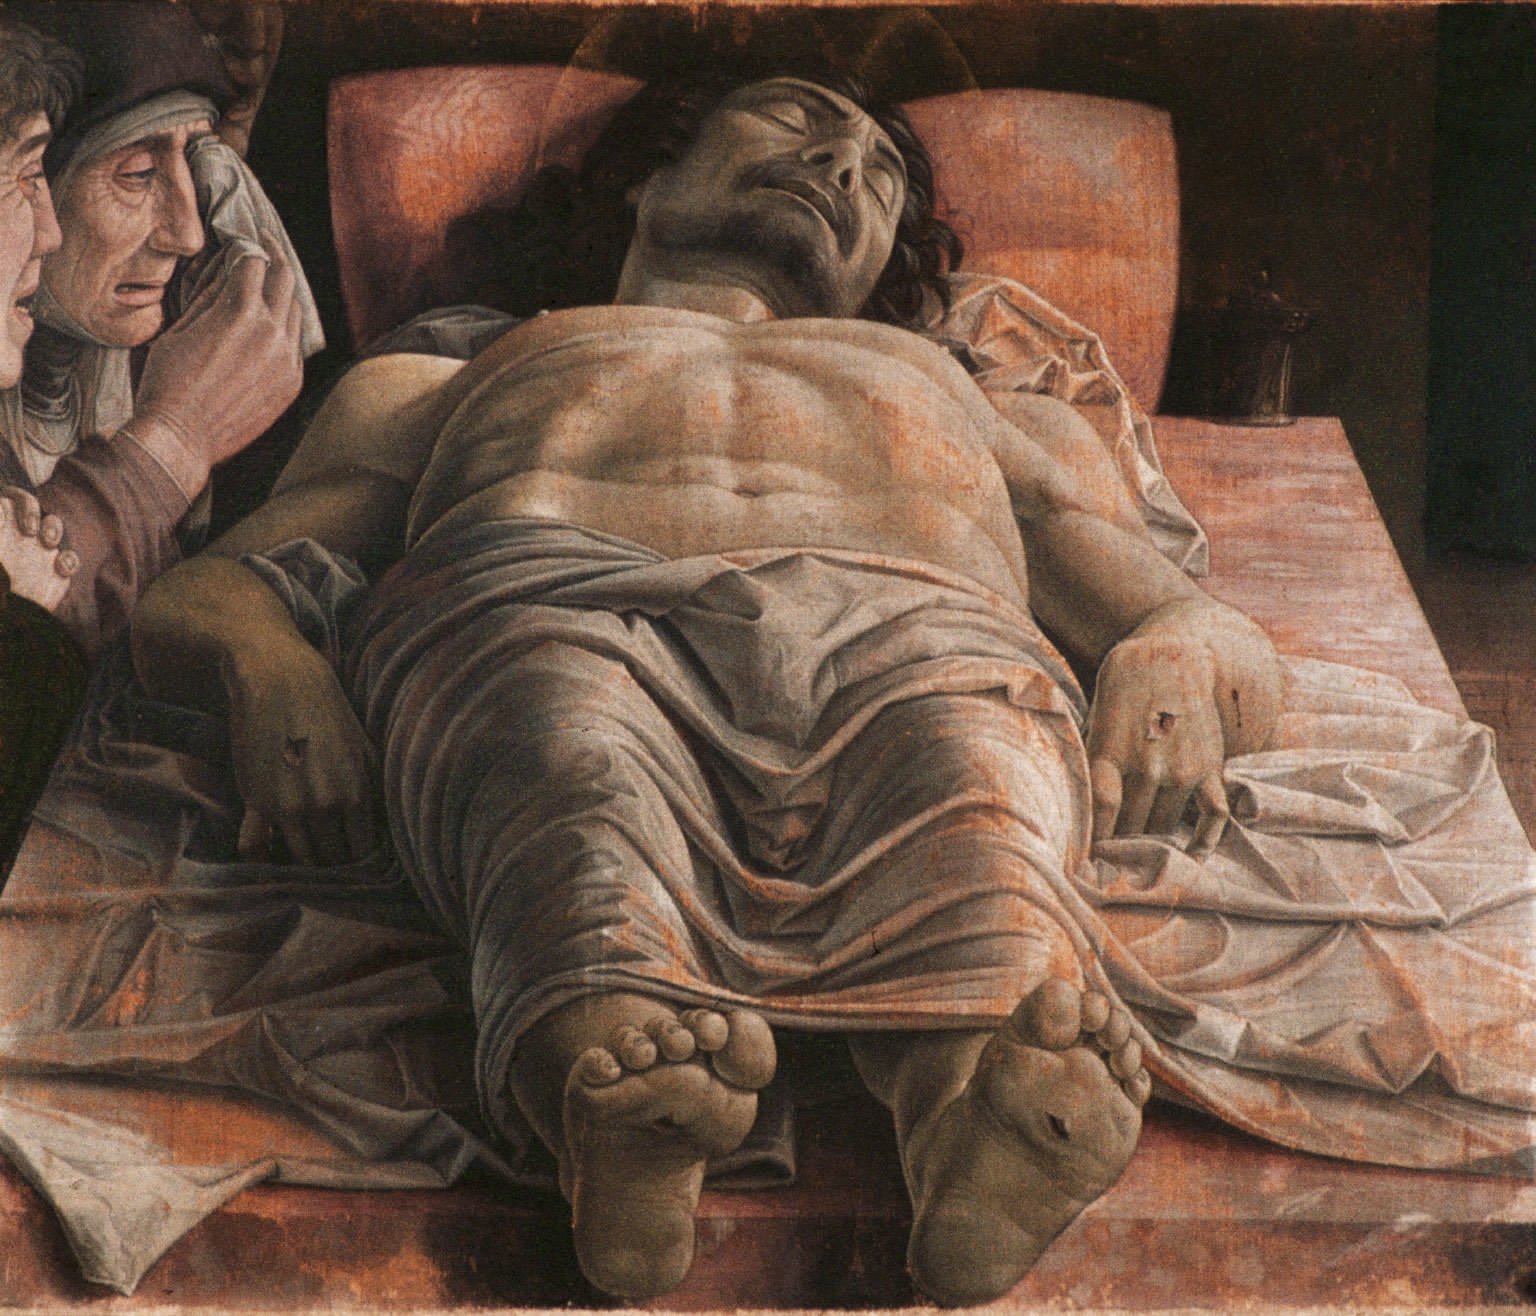 Andrea Mantegna, Cristo morto, 1475-1478 circa, tempera su tela, Milano, Pinacoteca di Brera